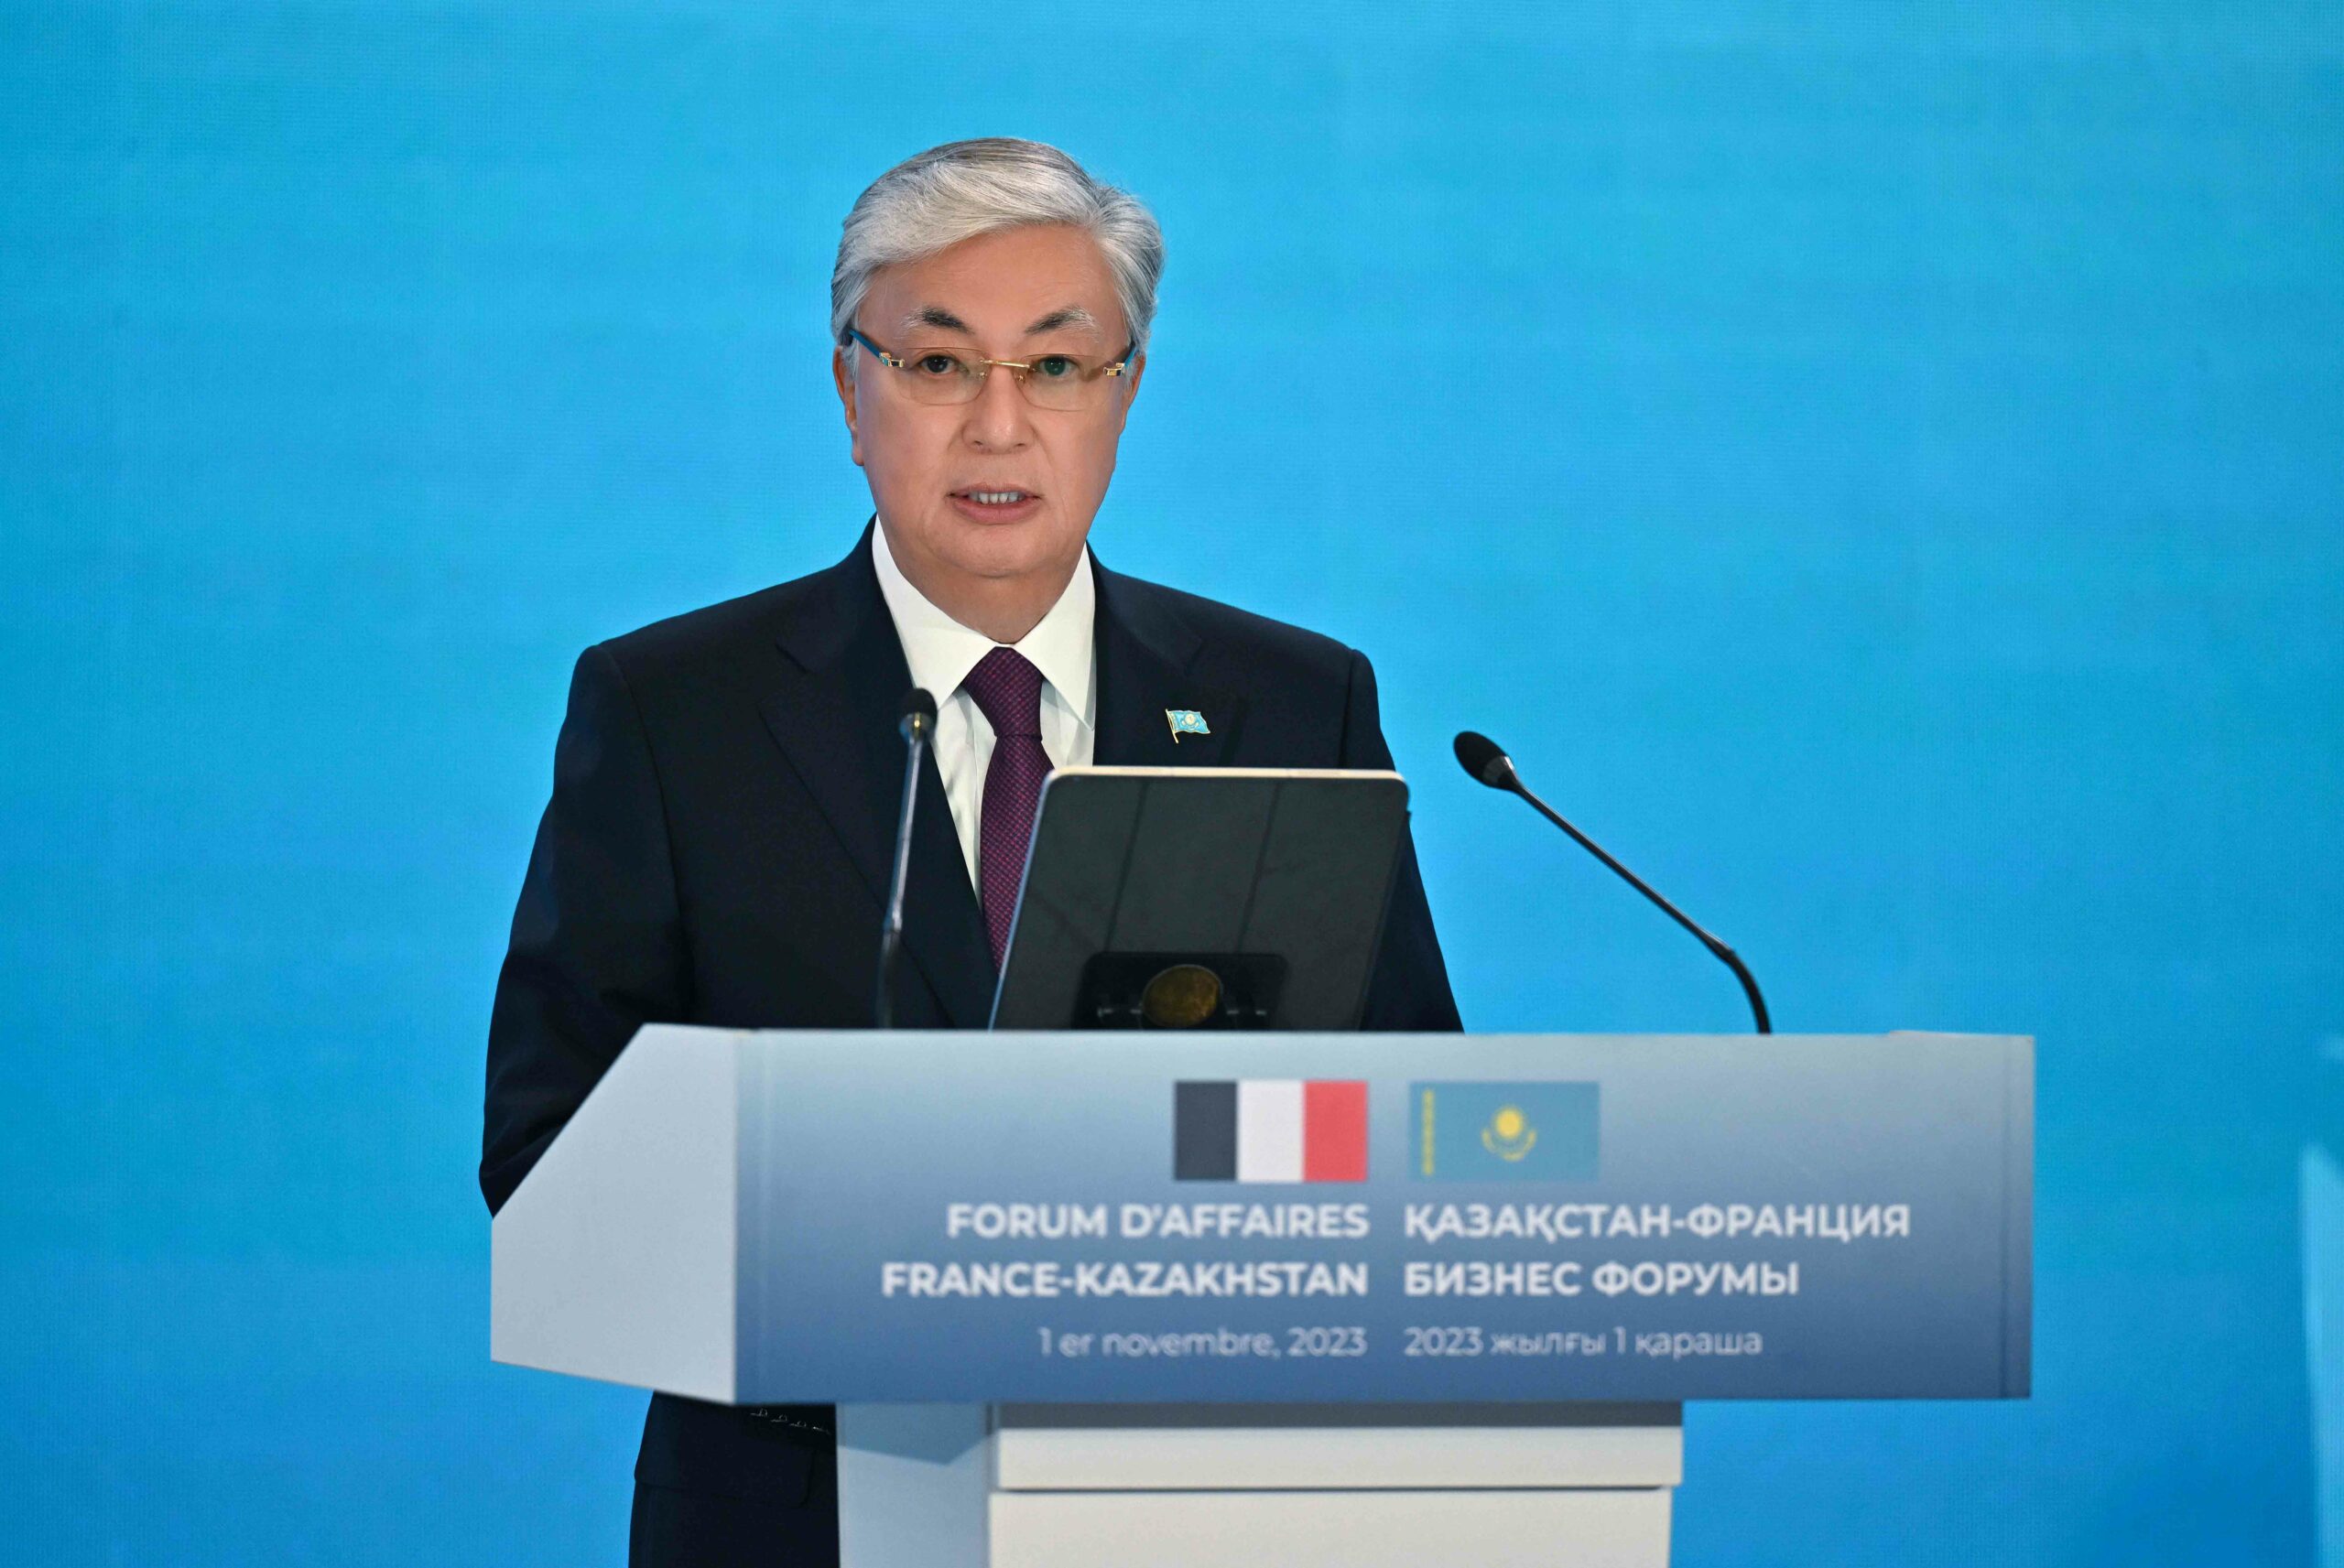 Forum d'affaires France-Kazakhstan